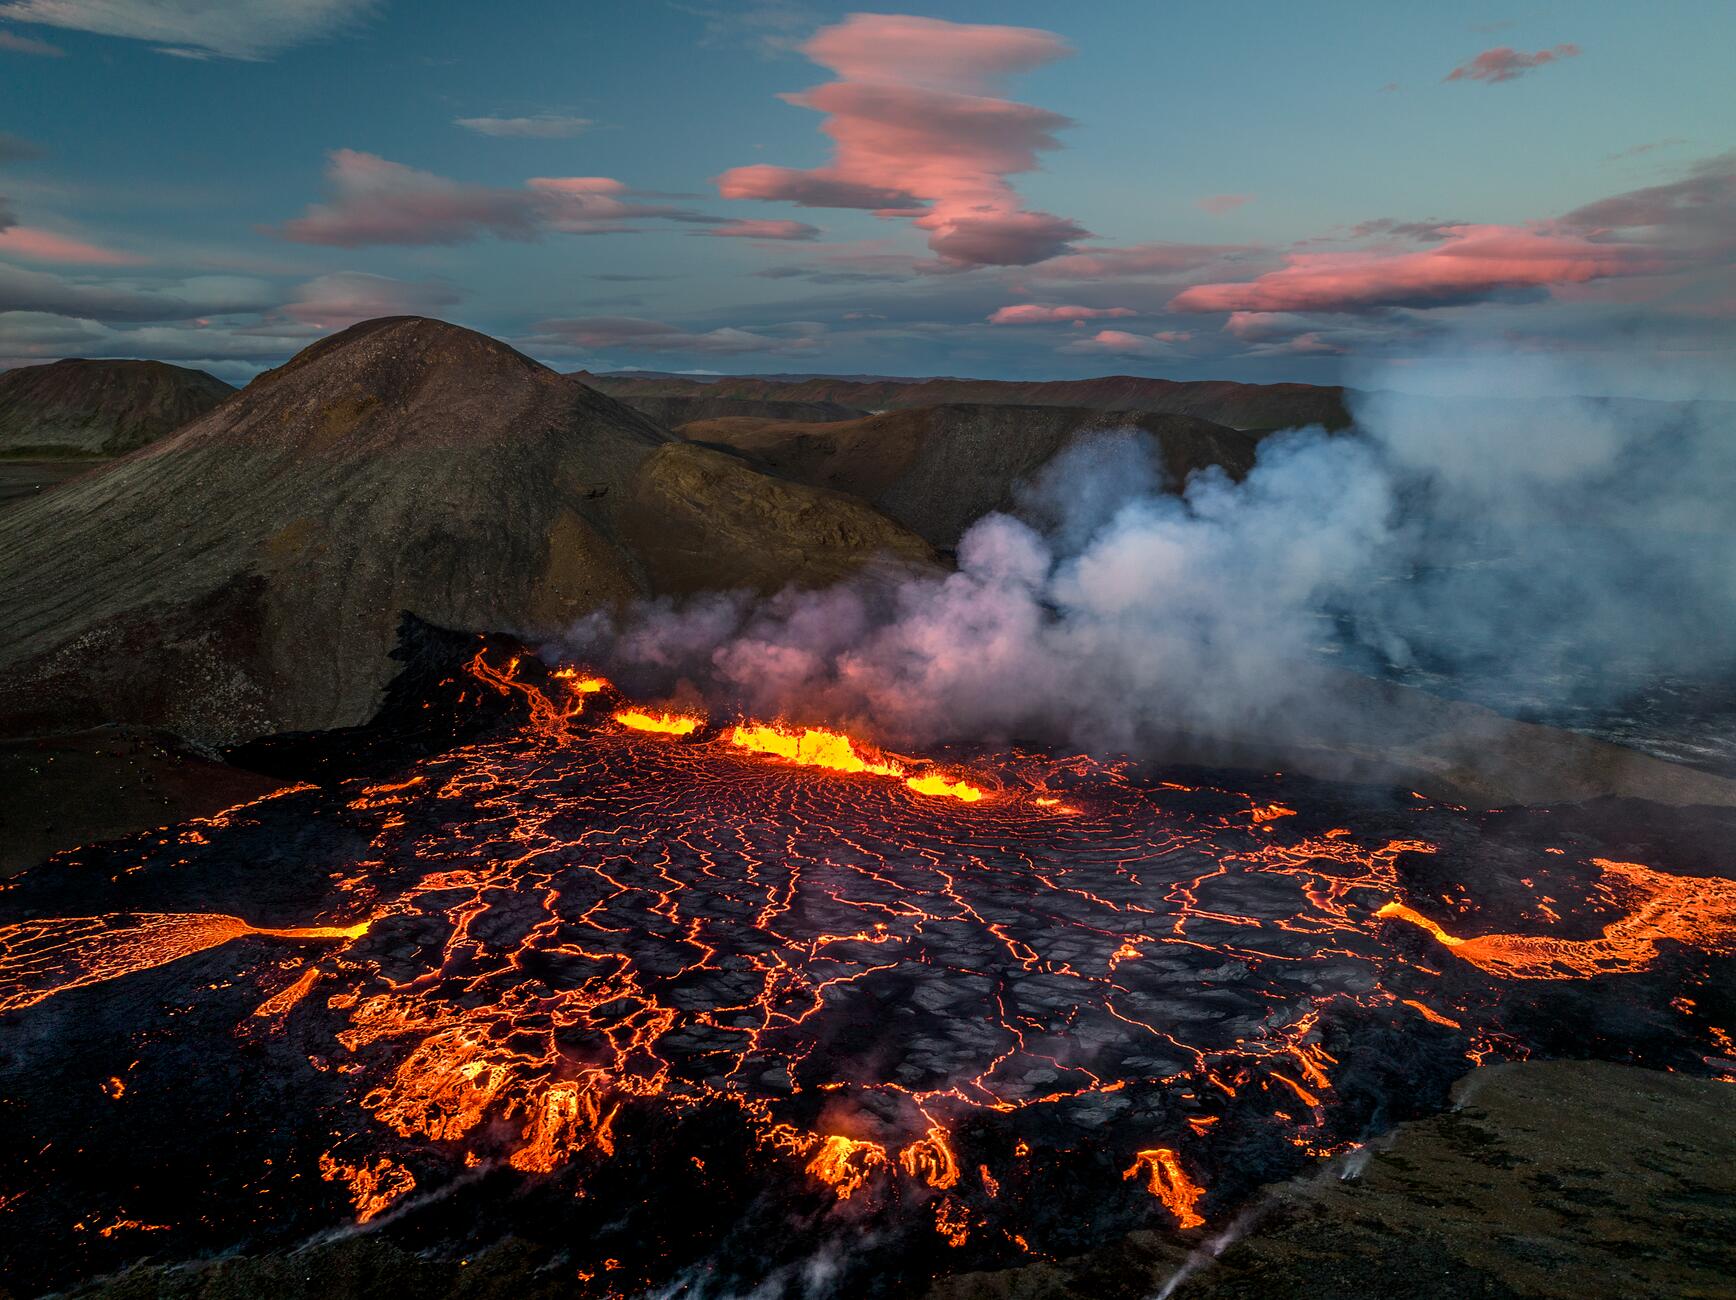 Фотография вулкана в Исландии с большим бассейном темной лавы с несколькими ярко-оранжевыми извержениями лавы, происходящими в бассейне